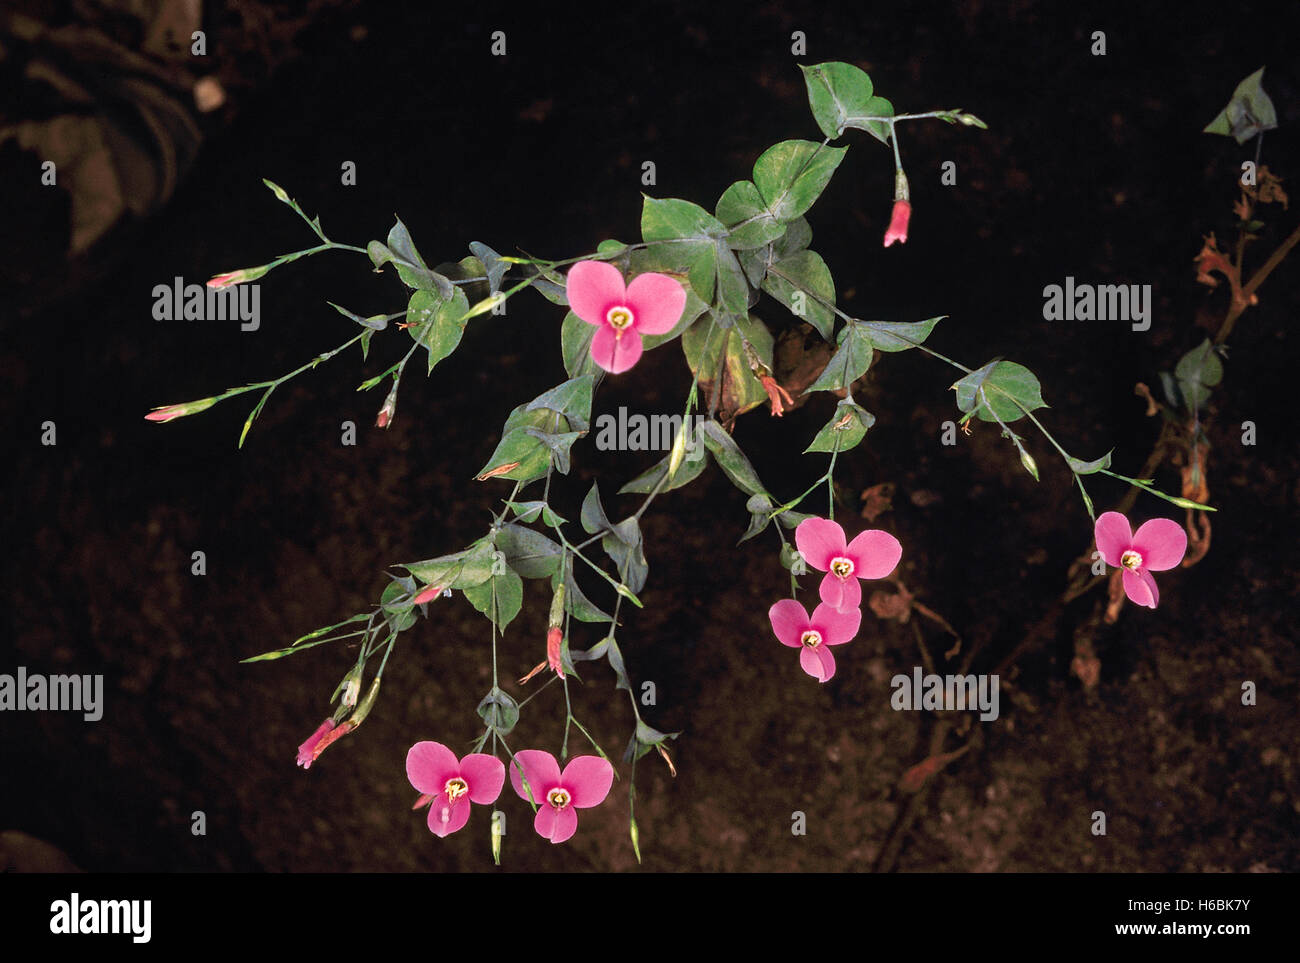 Canscora diffusa. Familie: gentianaceae. Ein kleines Kraut, die in feuchten wächst, mäßig schattige Bereiche. Stockfoto